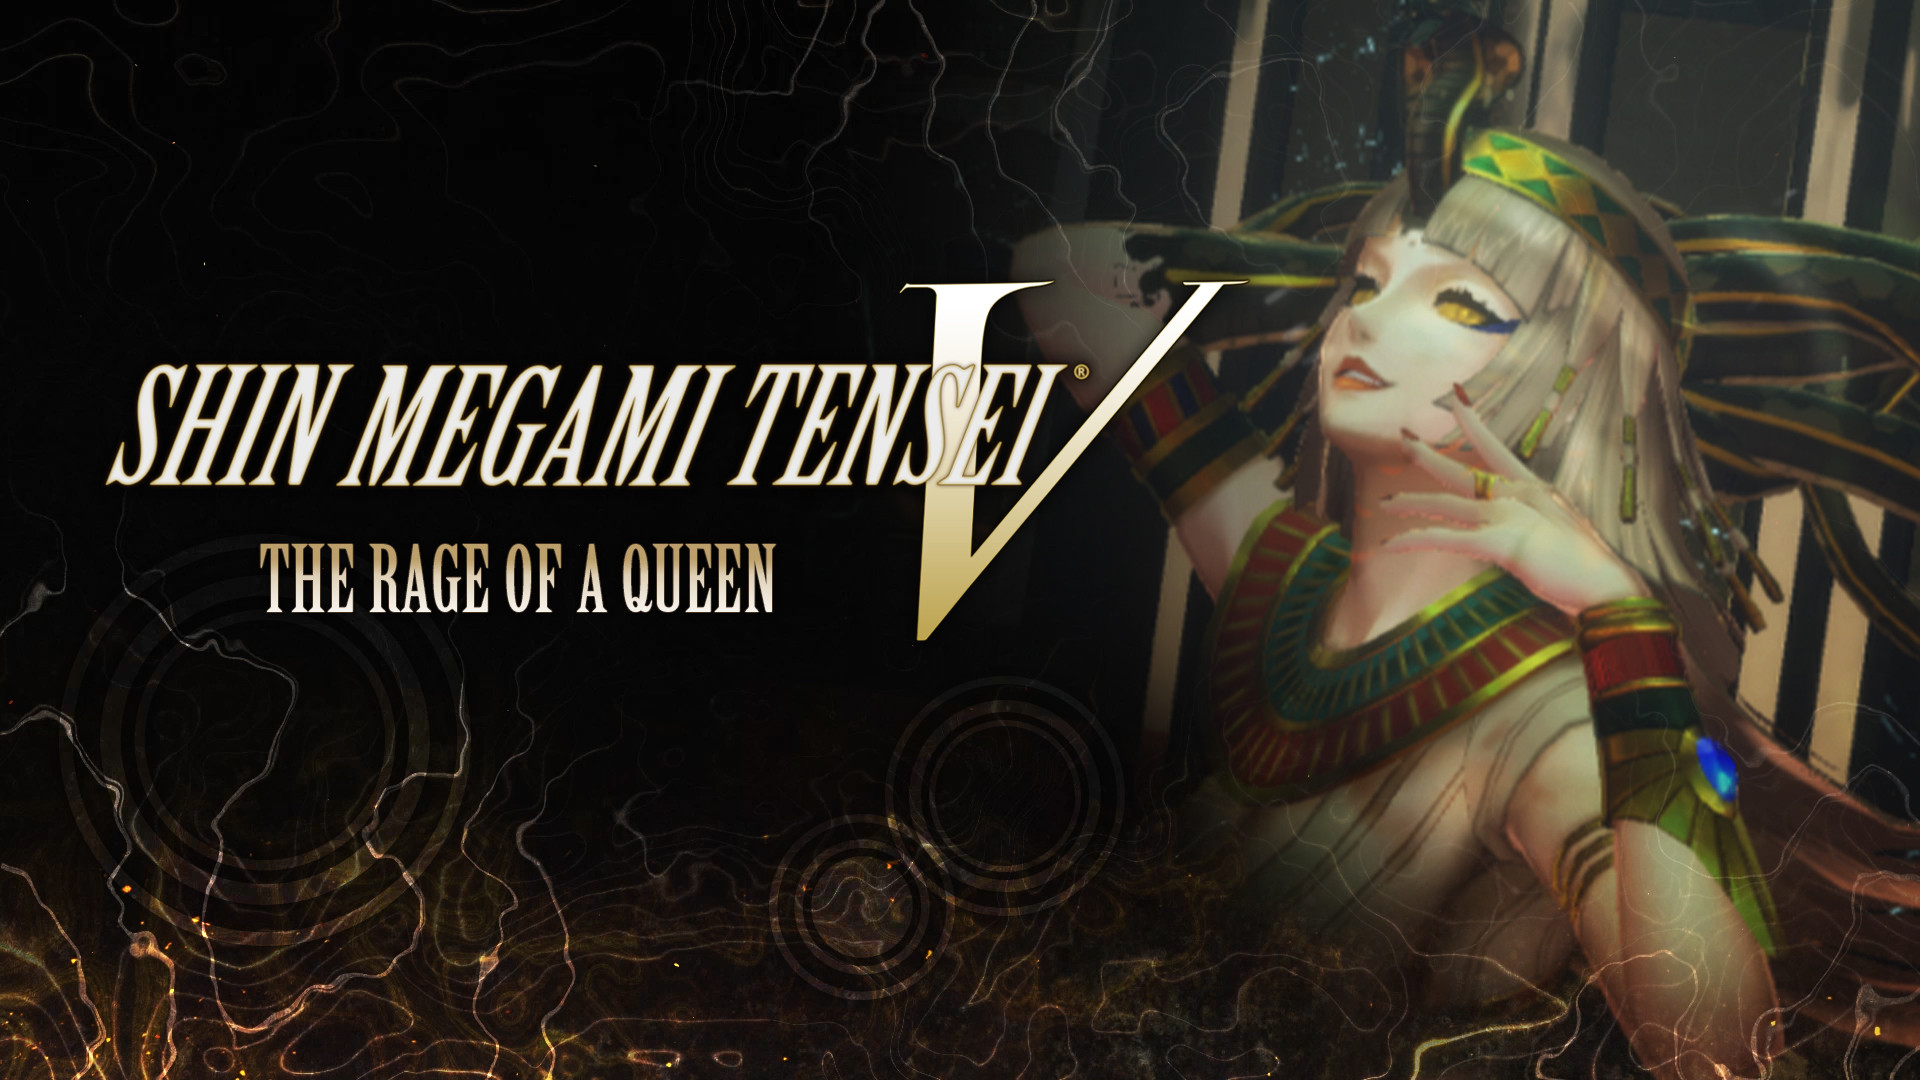 Nintendo AOC Shin Megami Tensei V: The Rage of a Queen DLC (extra content)